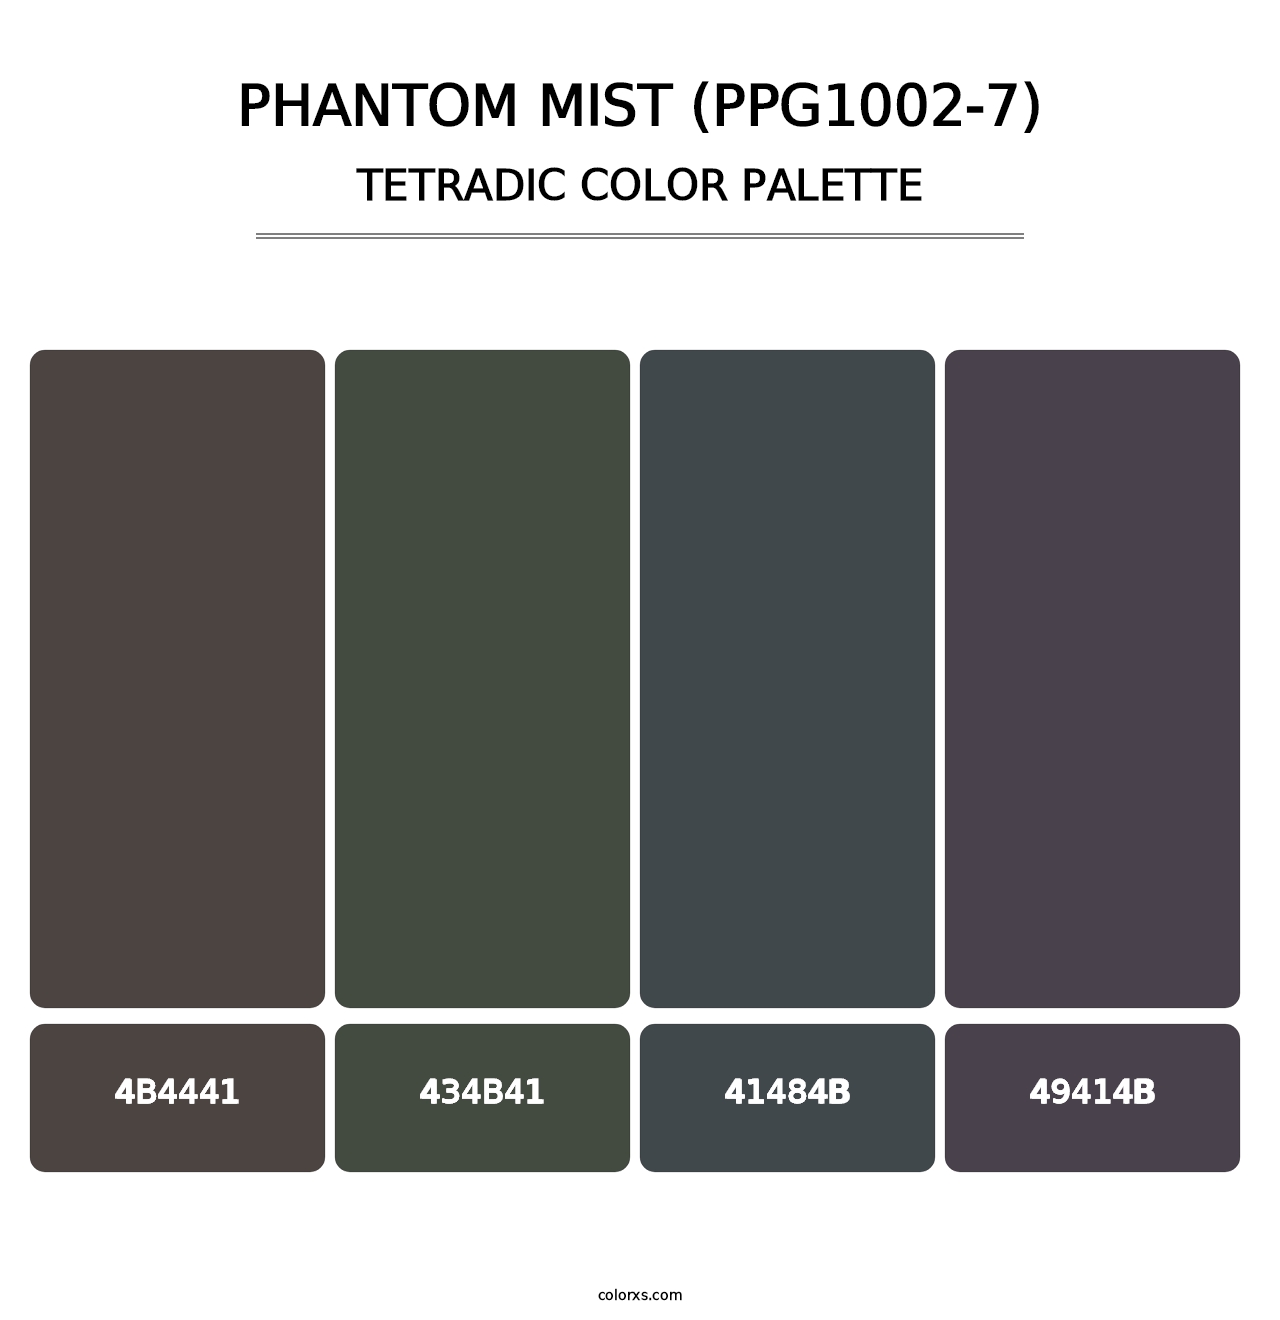 Phantom Mist (PPG1002-7) - Tetradic Color Palette